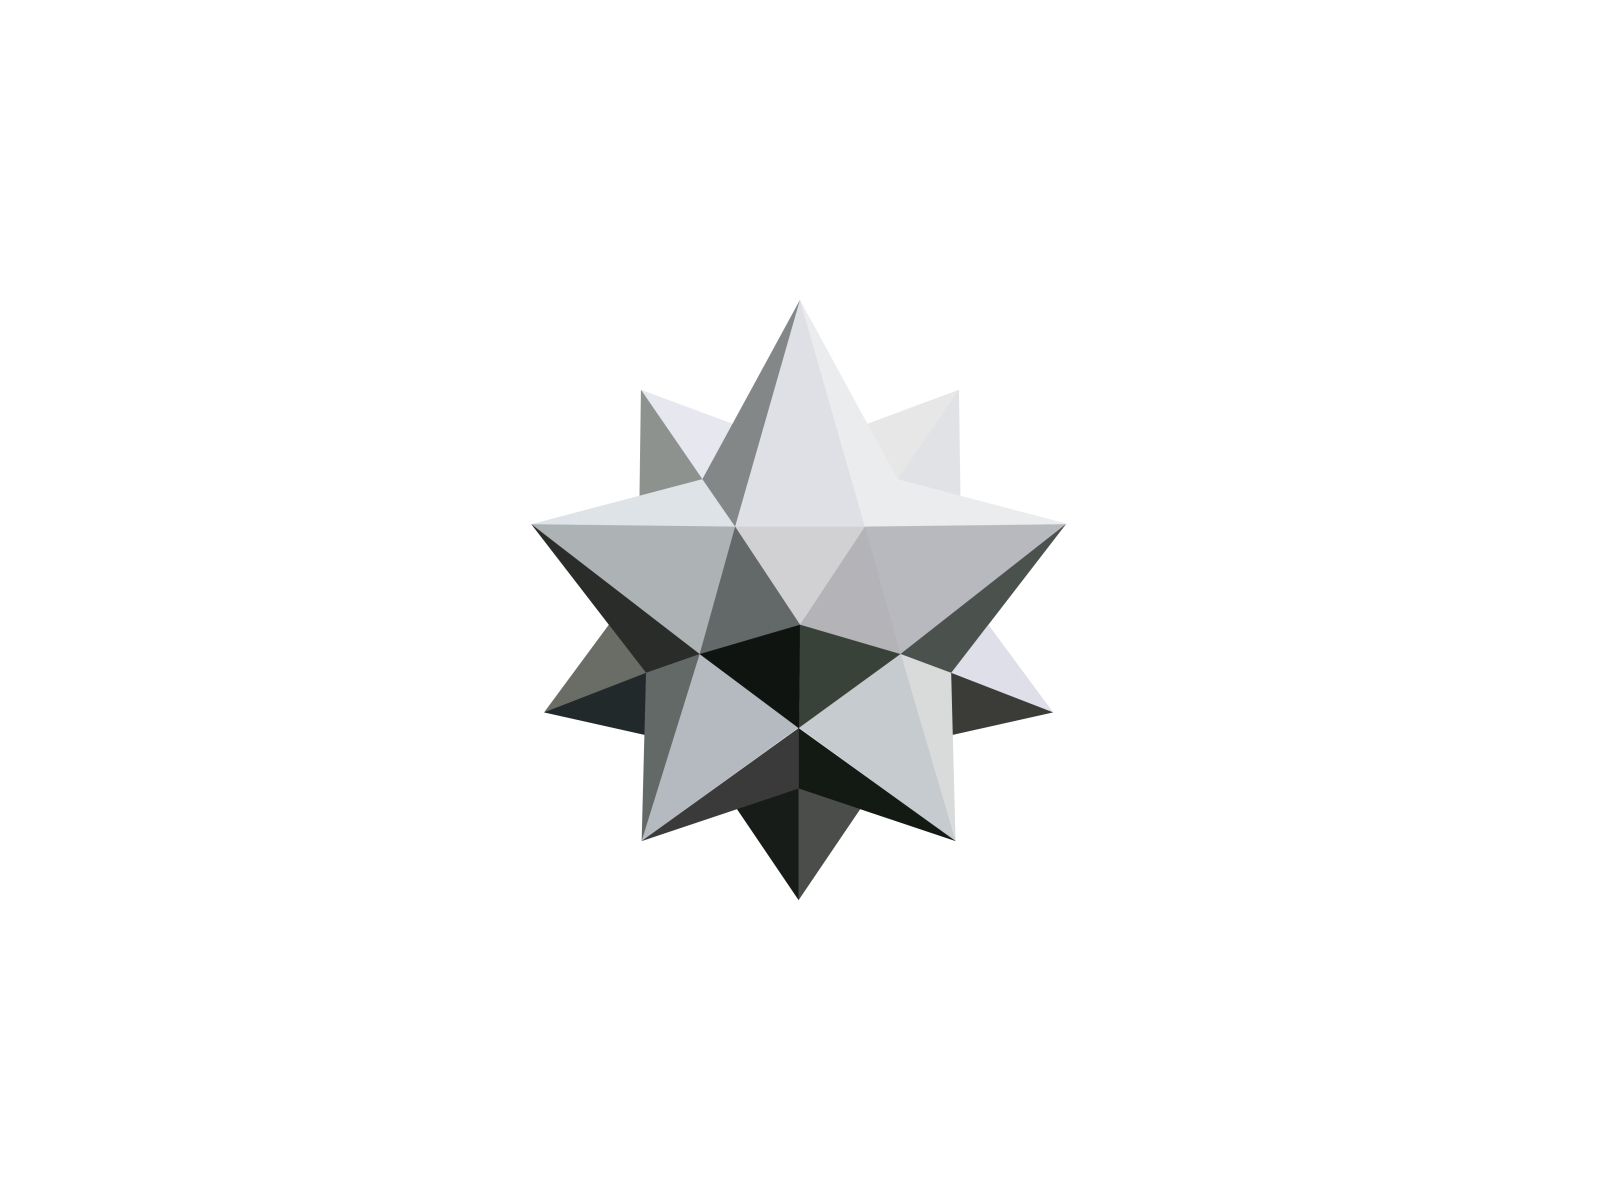 Wijzer Intentie technisch geometric 3d star shape by Kazal Islam on Dribbble